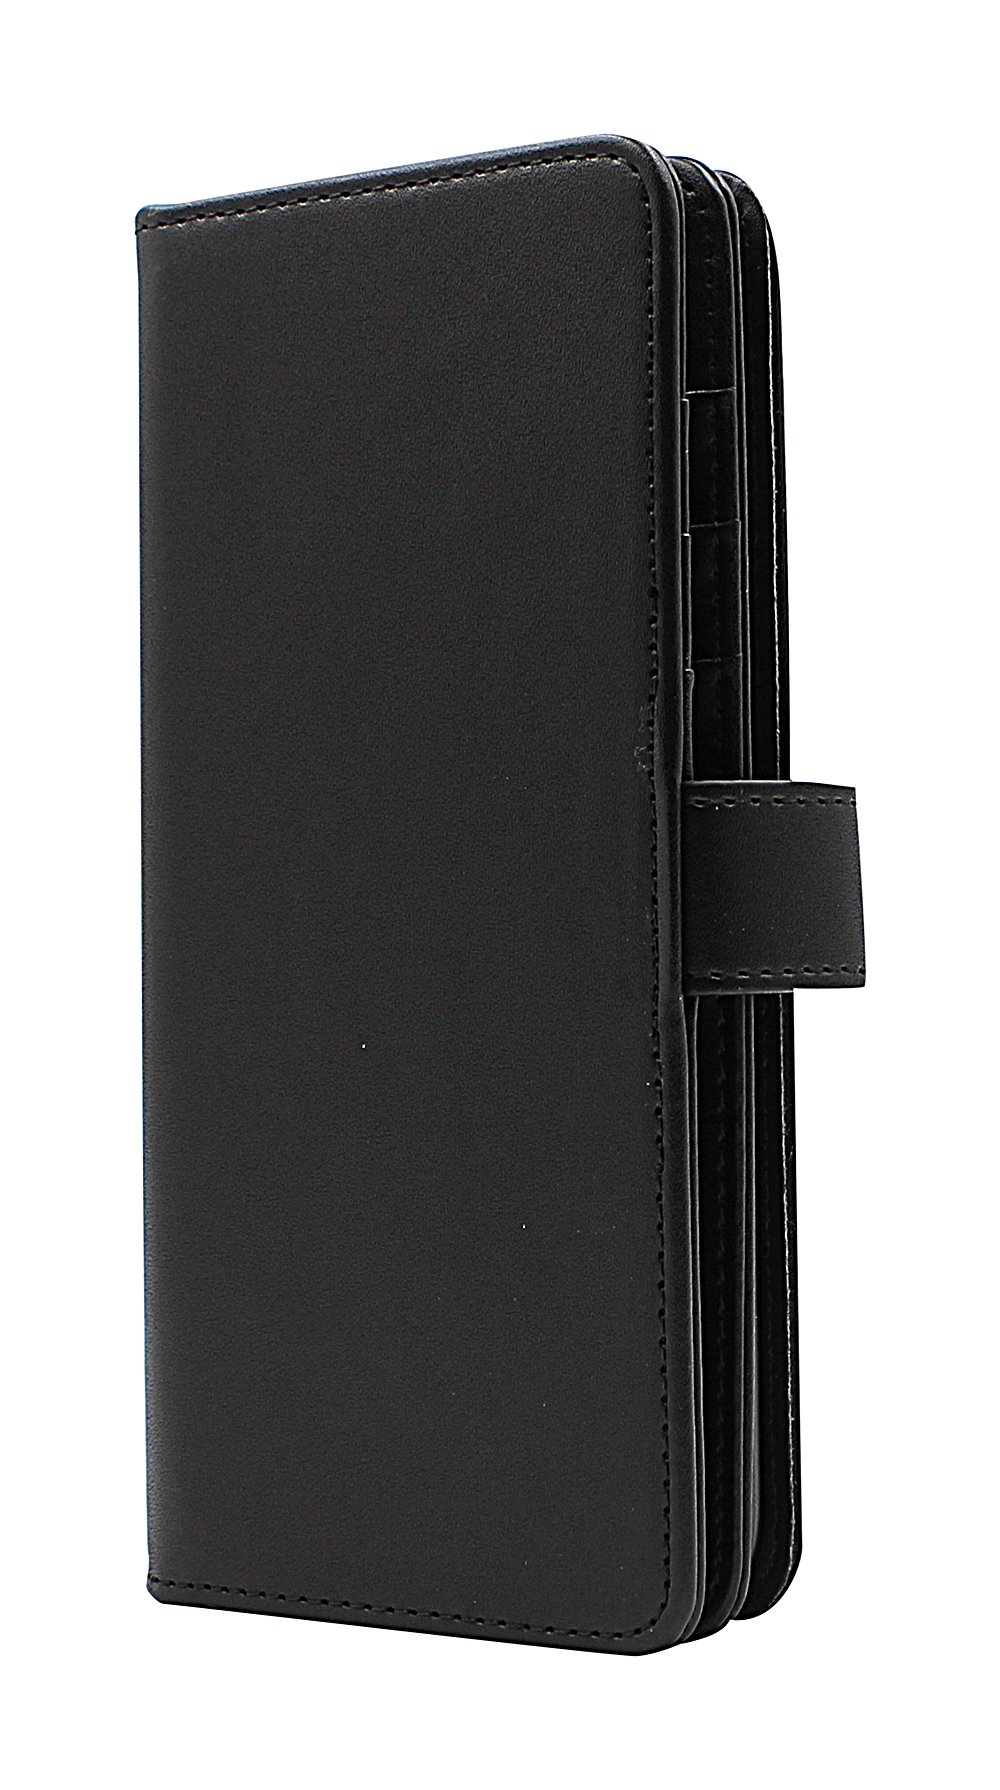 Skimblocker XL Wallet Xiaomi Mi 10 / Xiaomi Mi 10 Pro